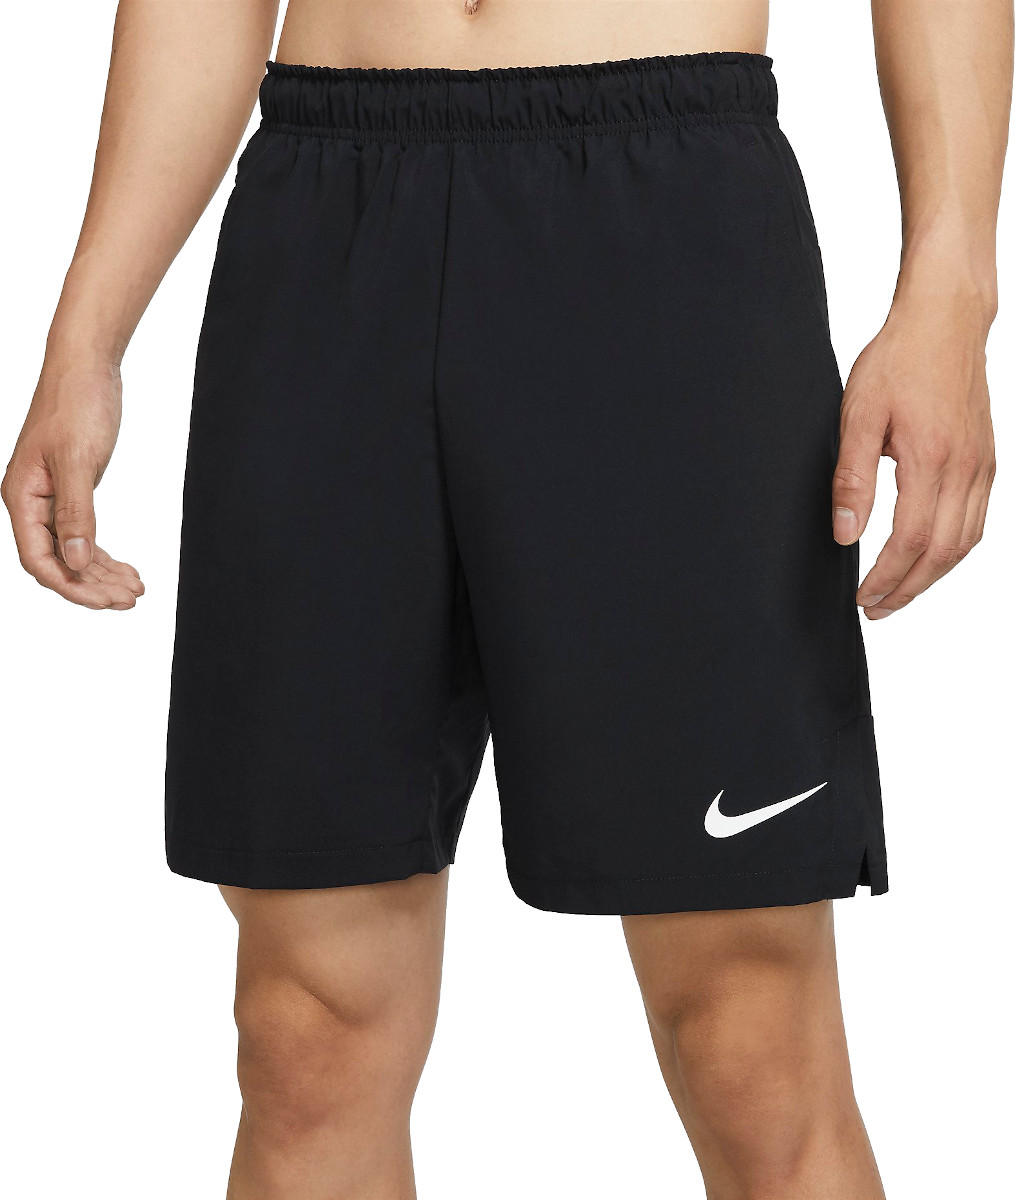 Pánské tkané tréninkové kraťasy Nike Flex